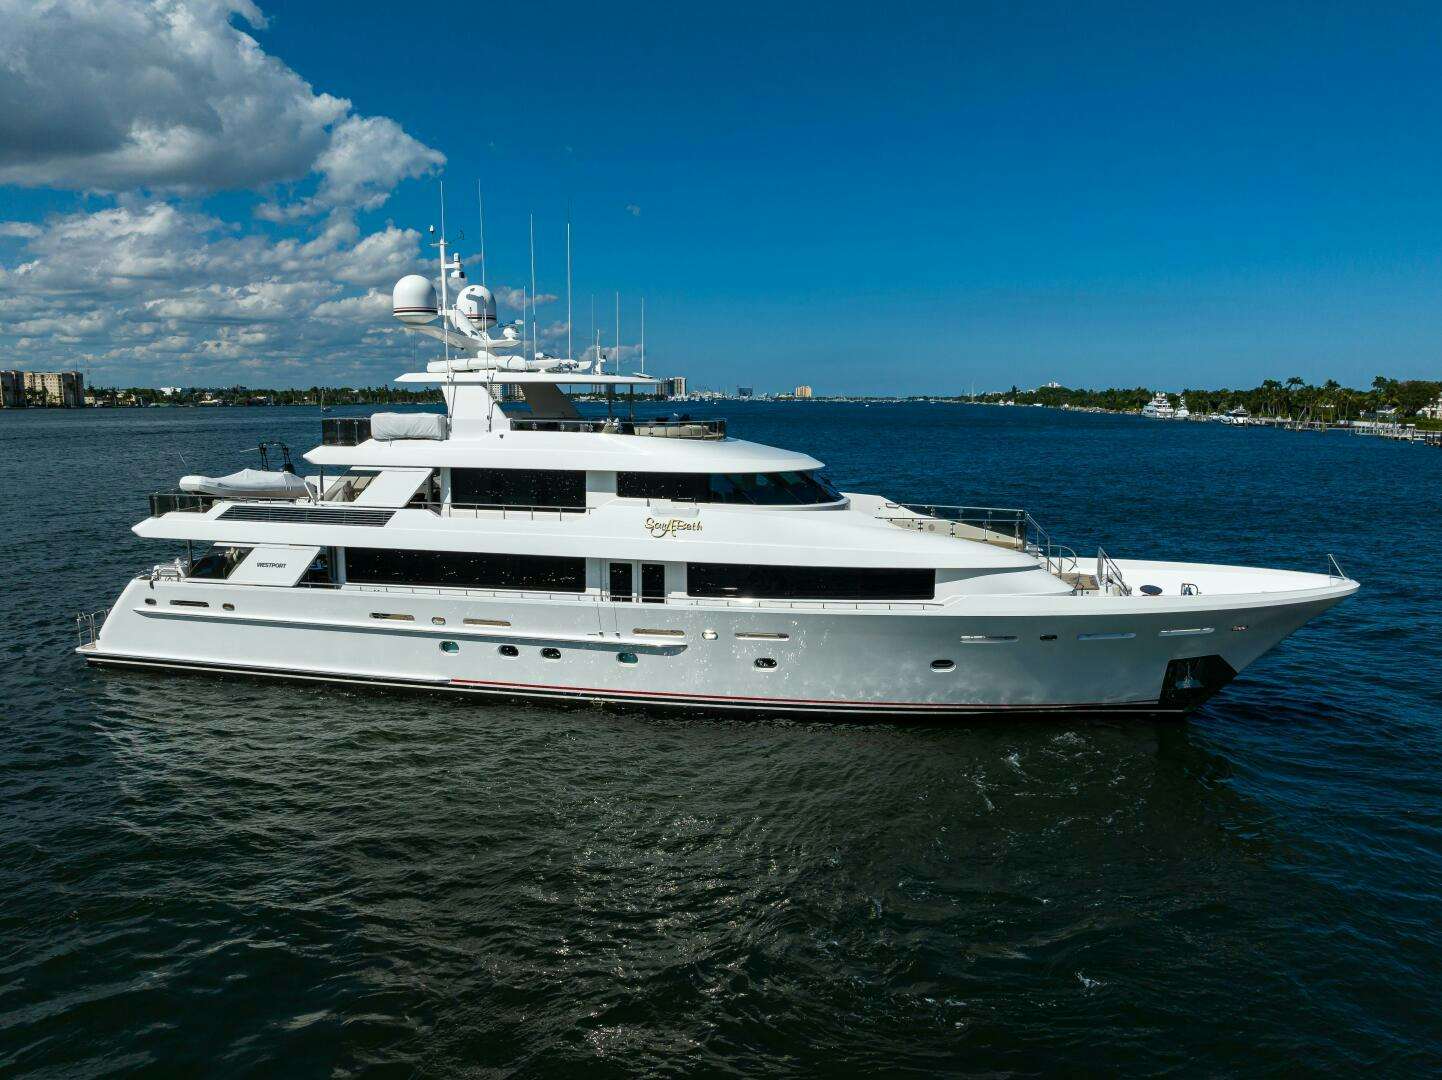 SARABETH Yacht for Sale in Palm Beach, 130' (39.62m) 2013 Westport